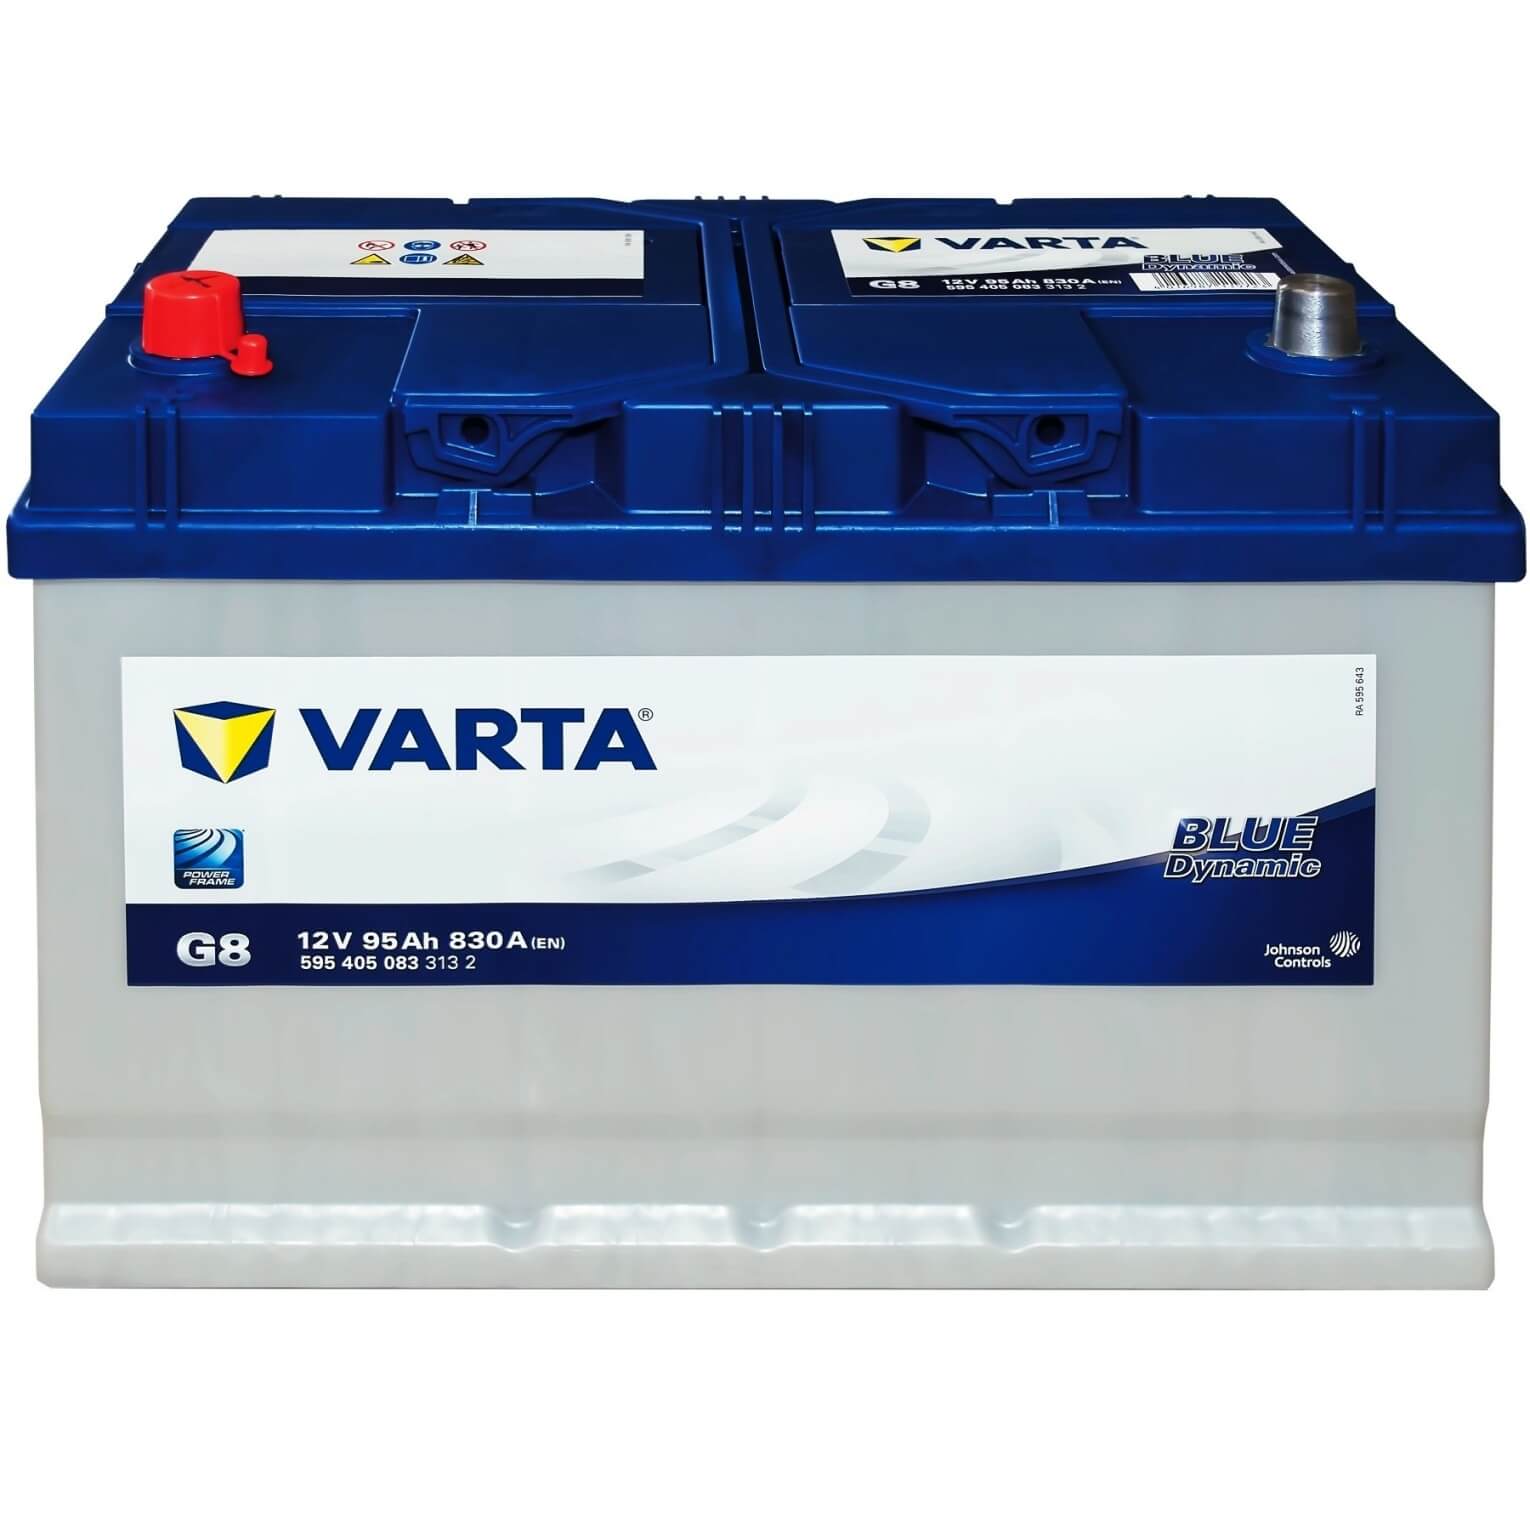 Varta AGA 512014010 (12 V, 12 Ah, 200 A) - acheter sur digitec